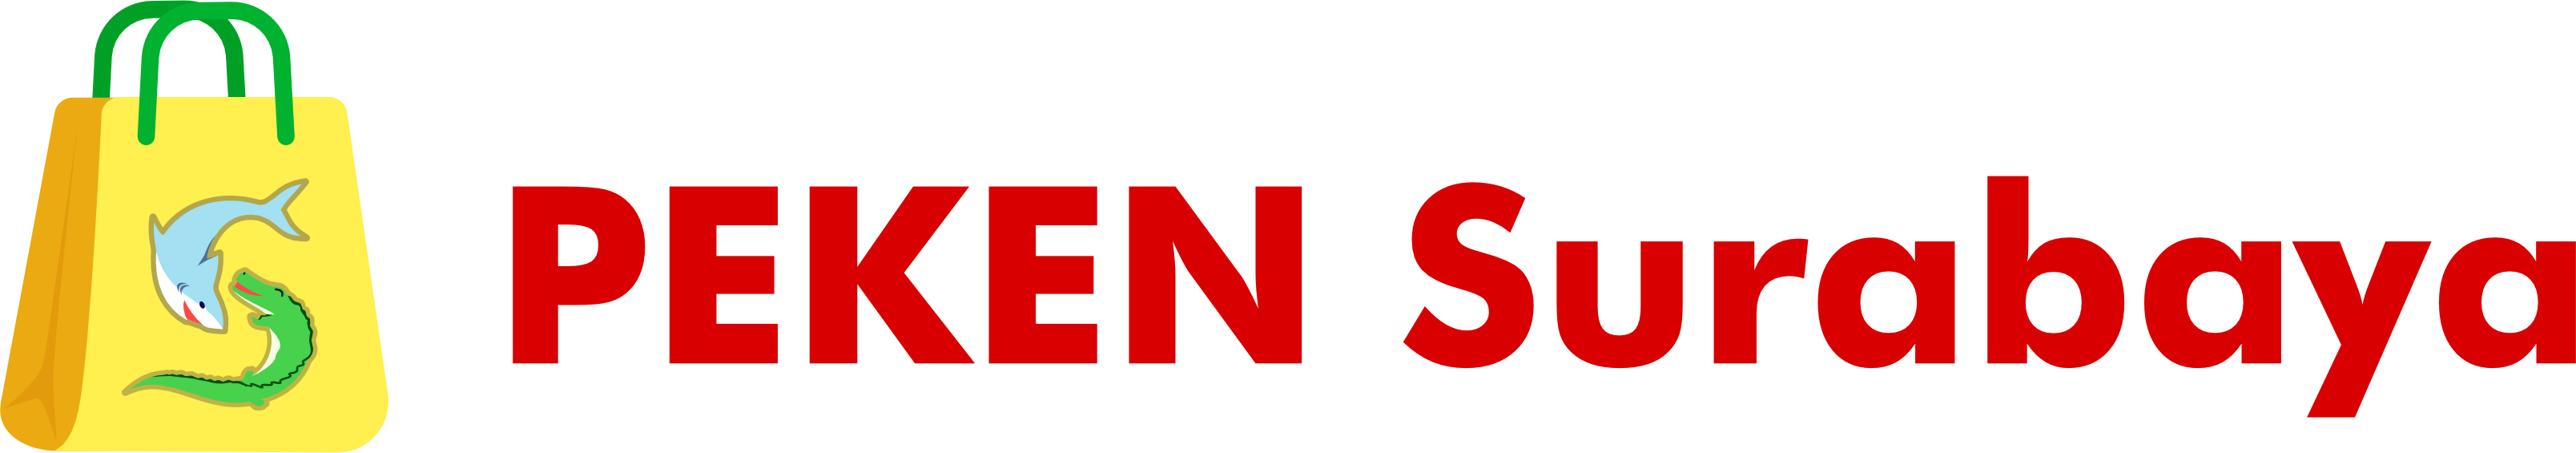 Logo Peken